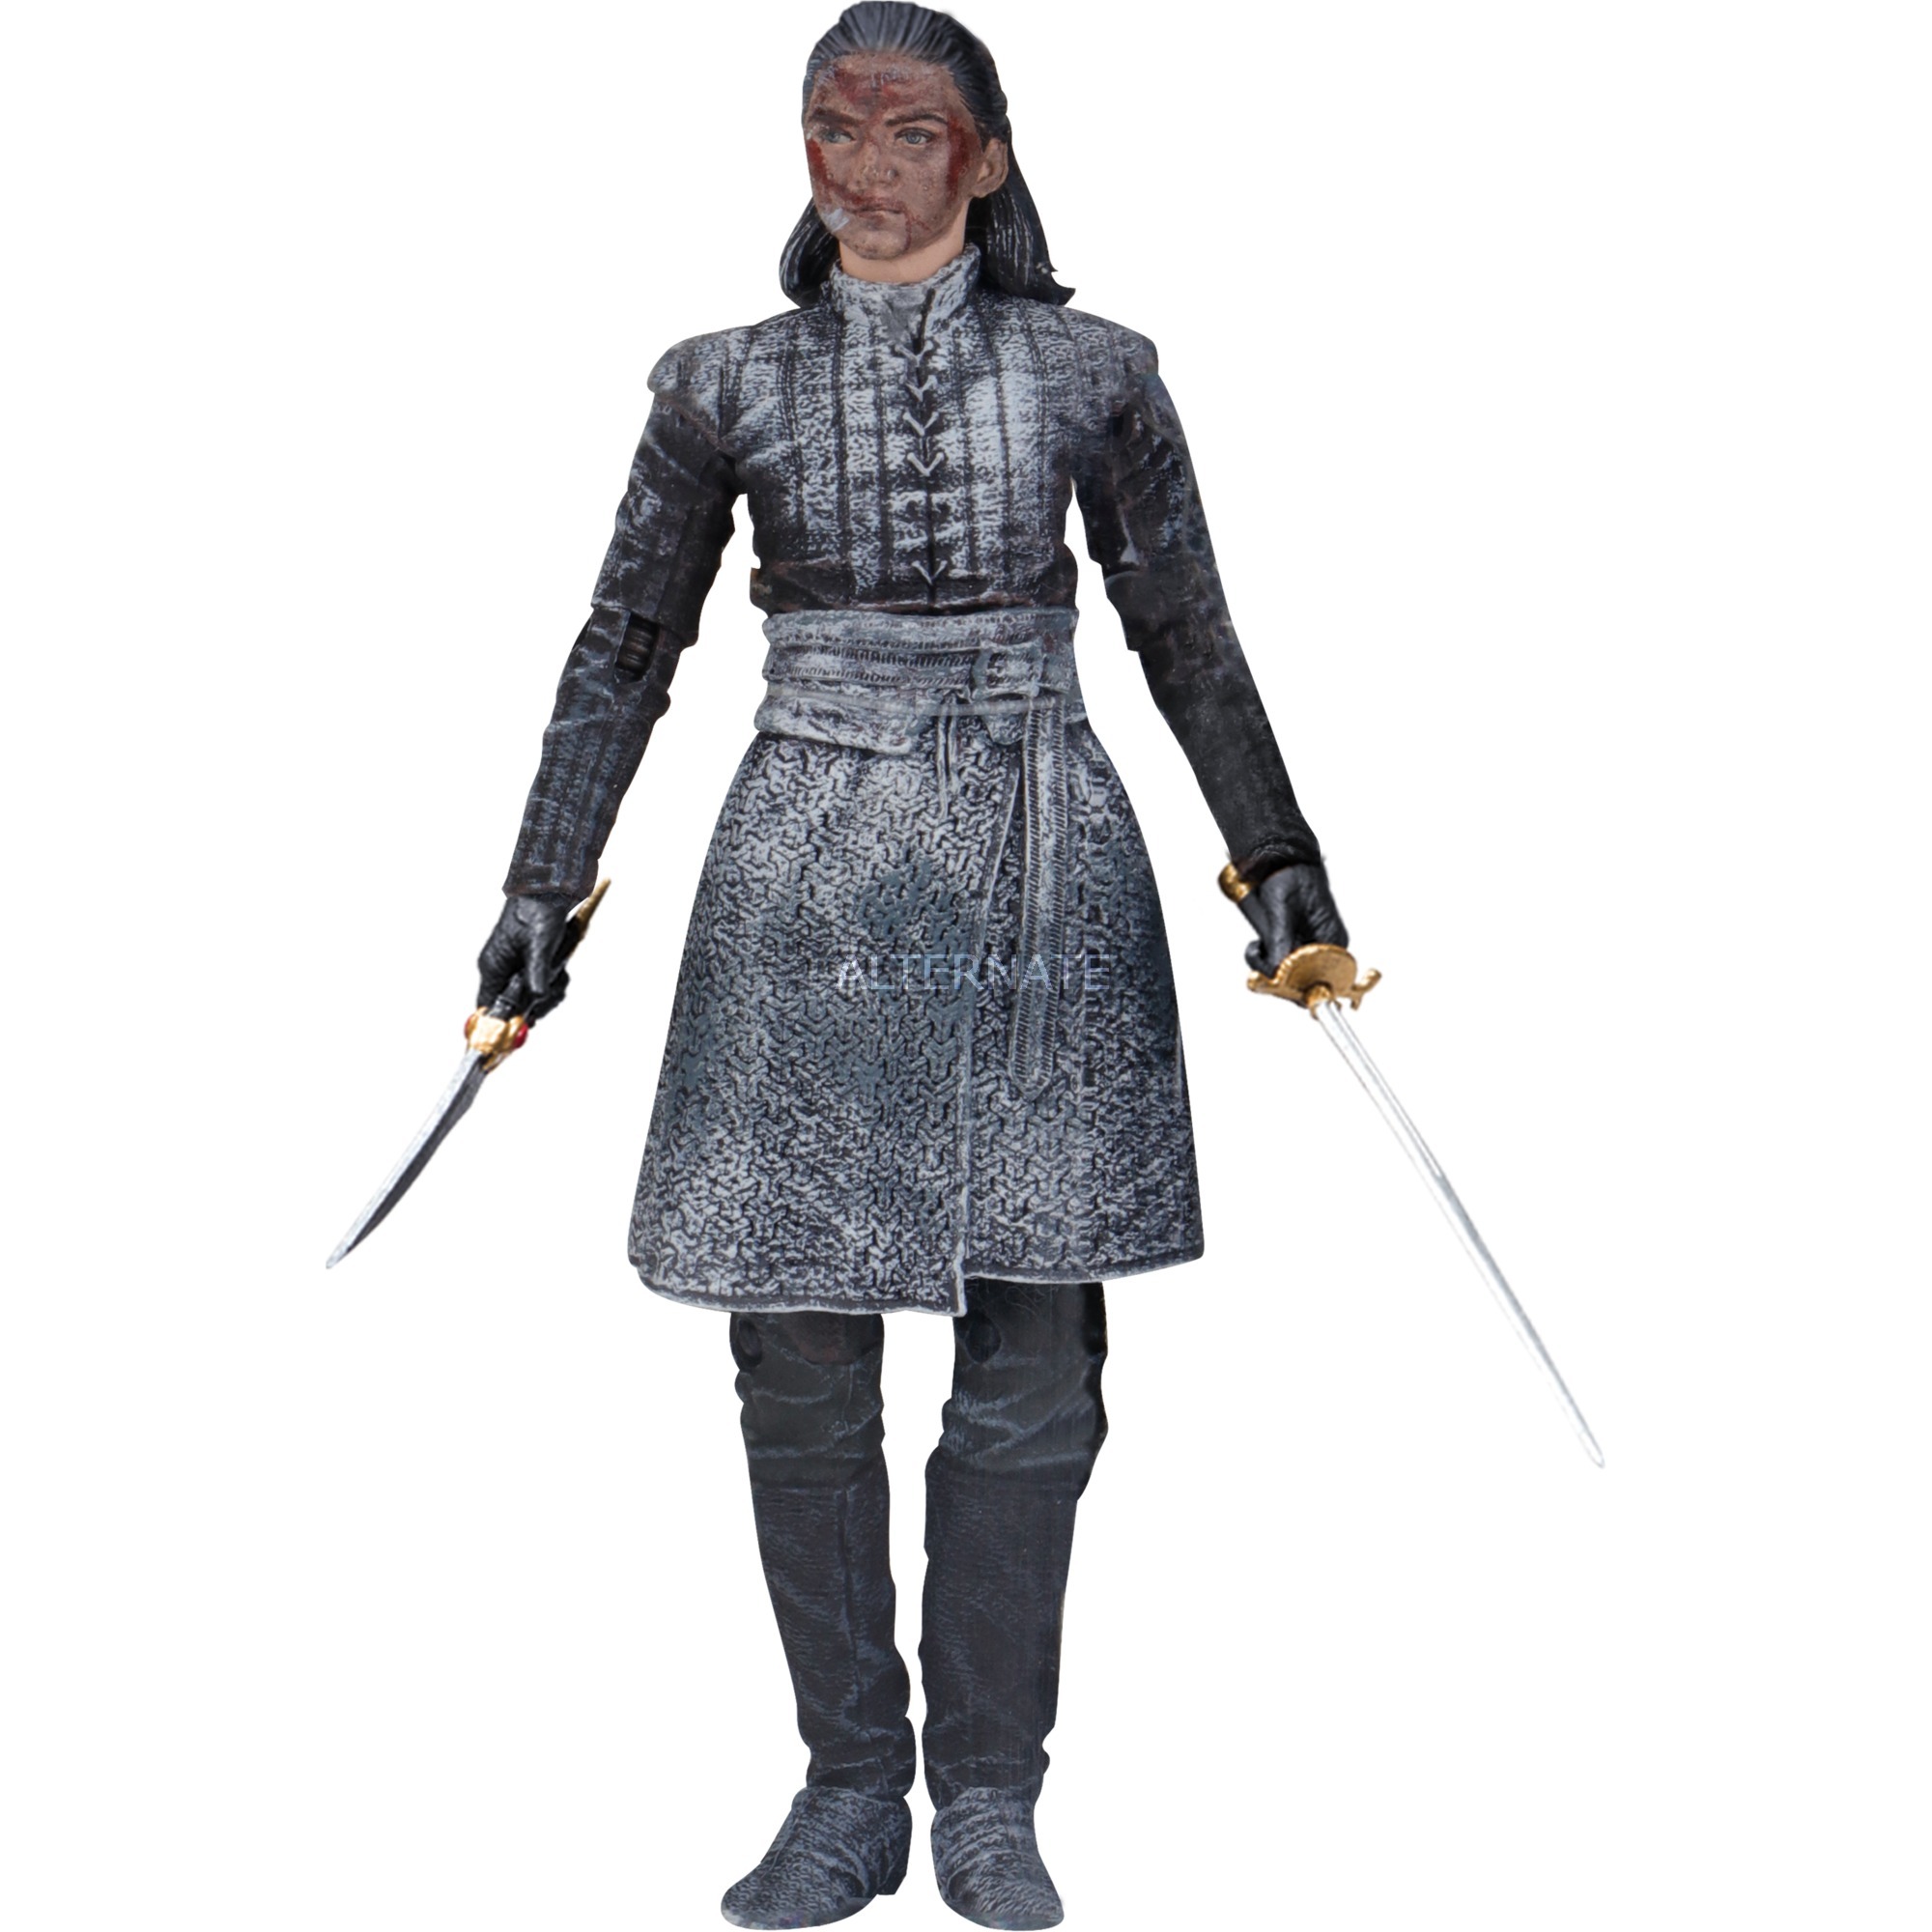 Image of Alternate - Game of Thrones Actionfigur Arya Stark King''s Landing Version 15 cm, Spielfigur online einkaufen bei Alternate